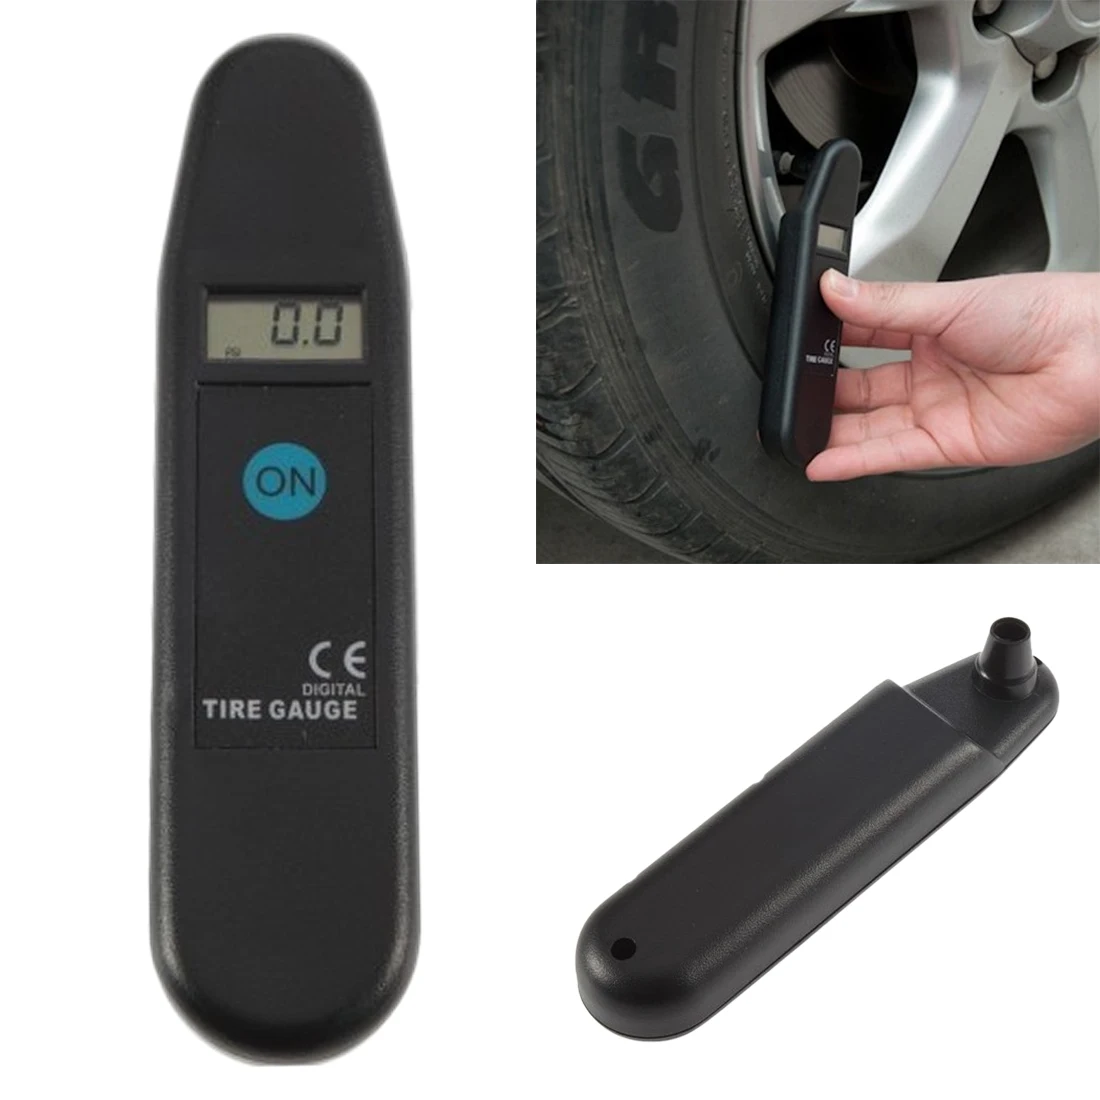 

Accuracy Digital LCD Wheel Air Tyre Pressure Gauge Car Motorcycle Manometer Detector Tool 0-100PSI